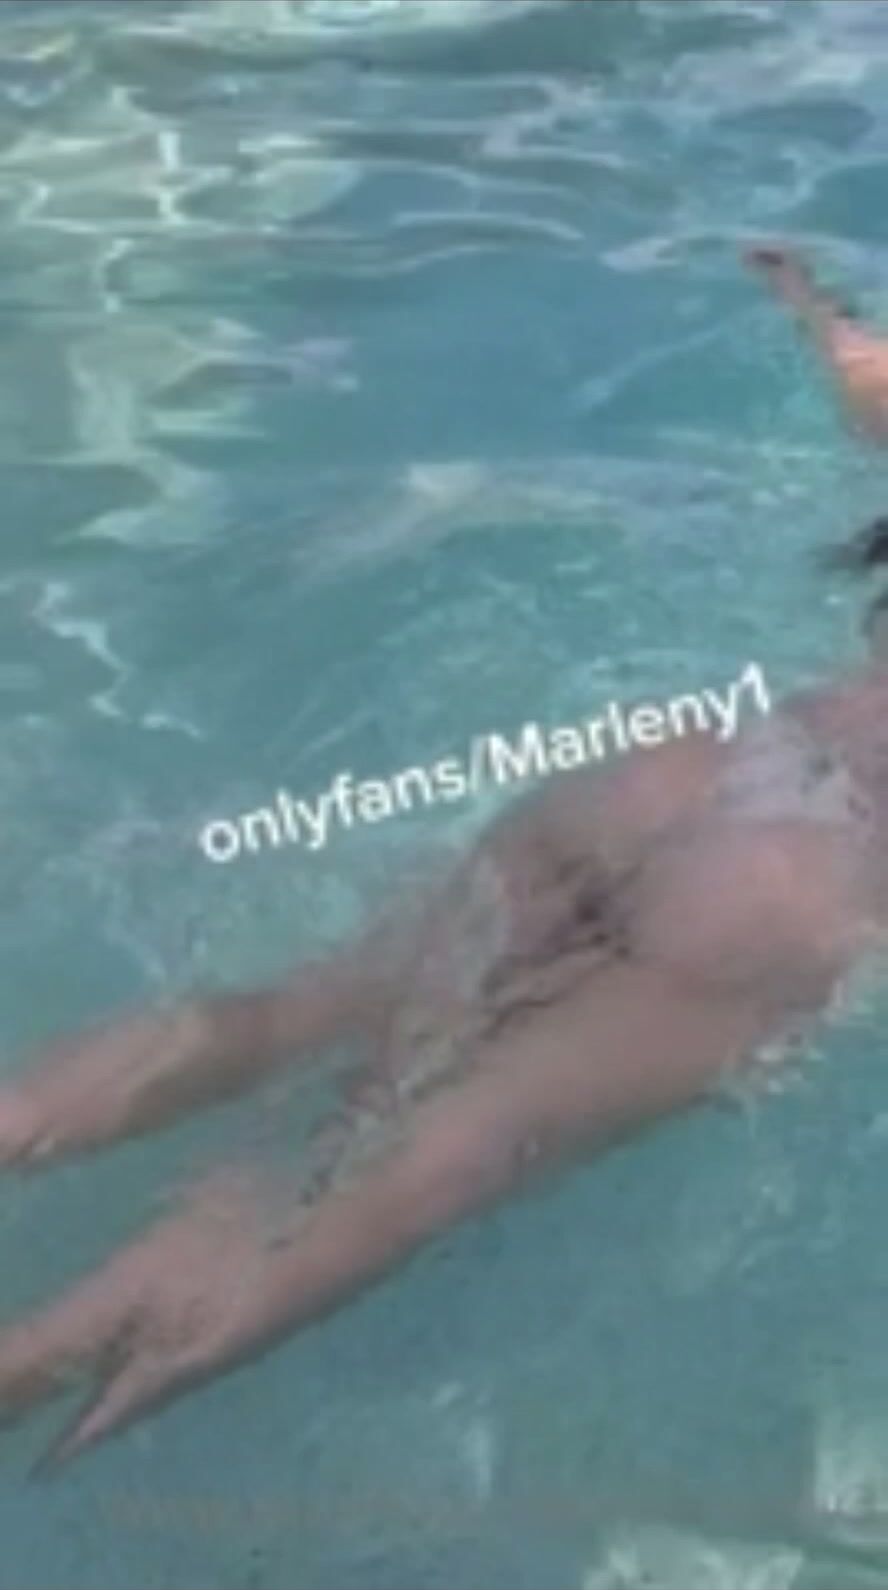 Marleny1 swimming white